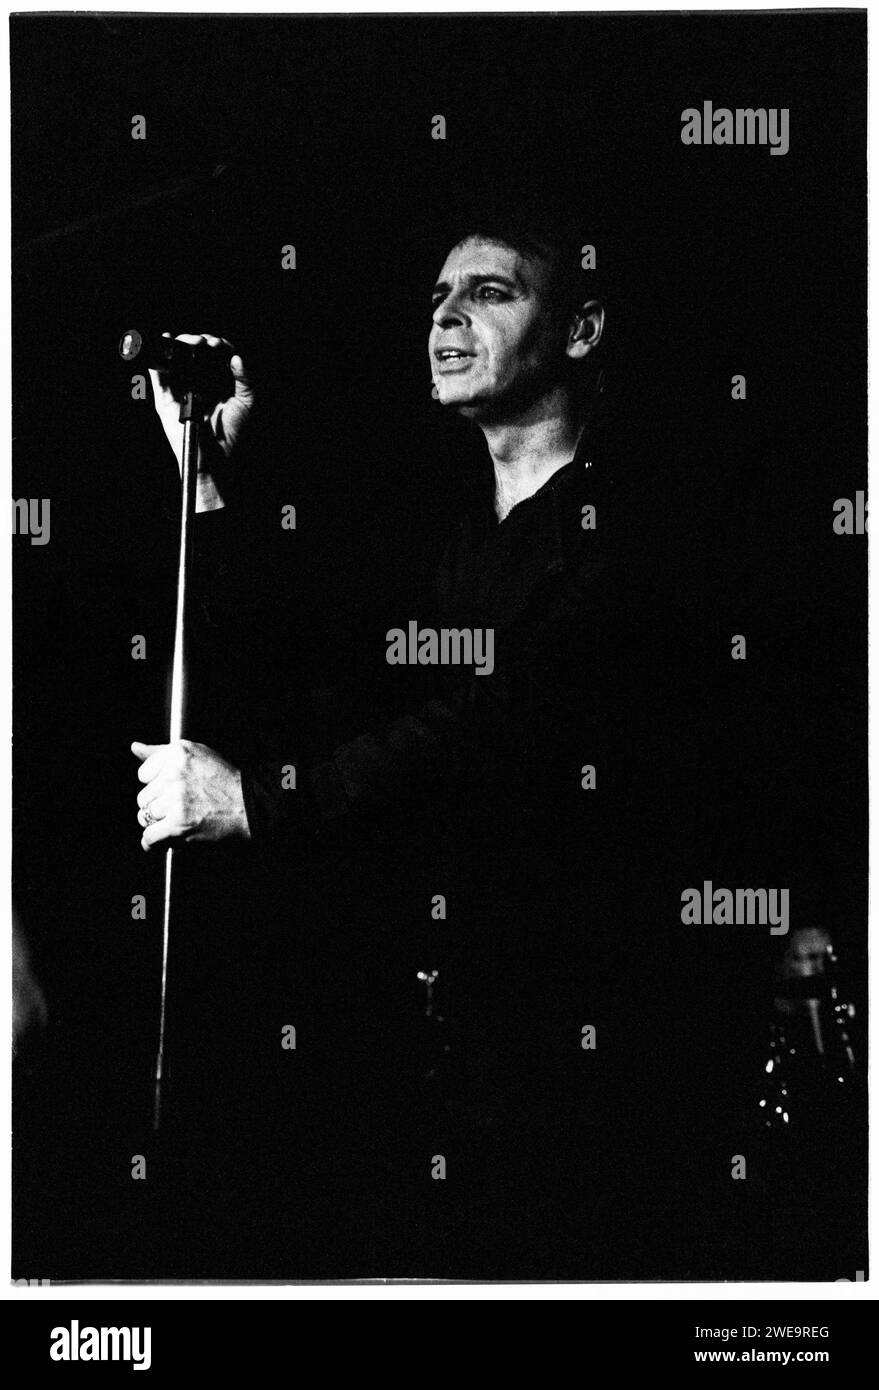 GARY NUMAN, KONZERT, 2004: Musiklegende Gary Numan spielt am 4. März 2000 im Barfly Club in Cardiff, Wales. Foto: Rob Watkins. INFO: Gary Numan, geboren 1958, ist ein englischer Pionier. In den späten 70er Jahren entwickelte sich sein elektronischer und industrieller Sound, der in Hits wie „Cars“ und Alben wie „The Pleasure Principle“ verkörpert wurde, und beeinflusste die neuen Genres Wave und Synthie-Pop und hinterließ einen dauerhaften Einfluss auf die Musiklandschaft. Stockfoto